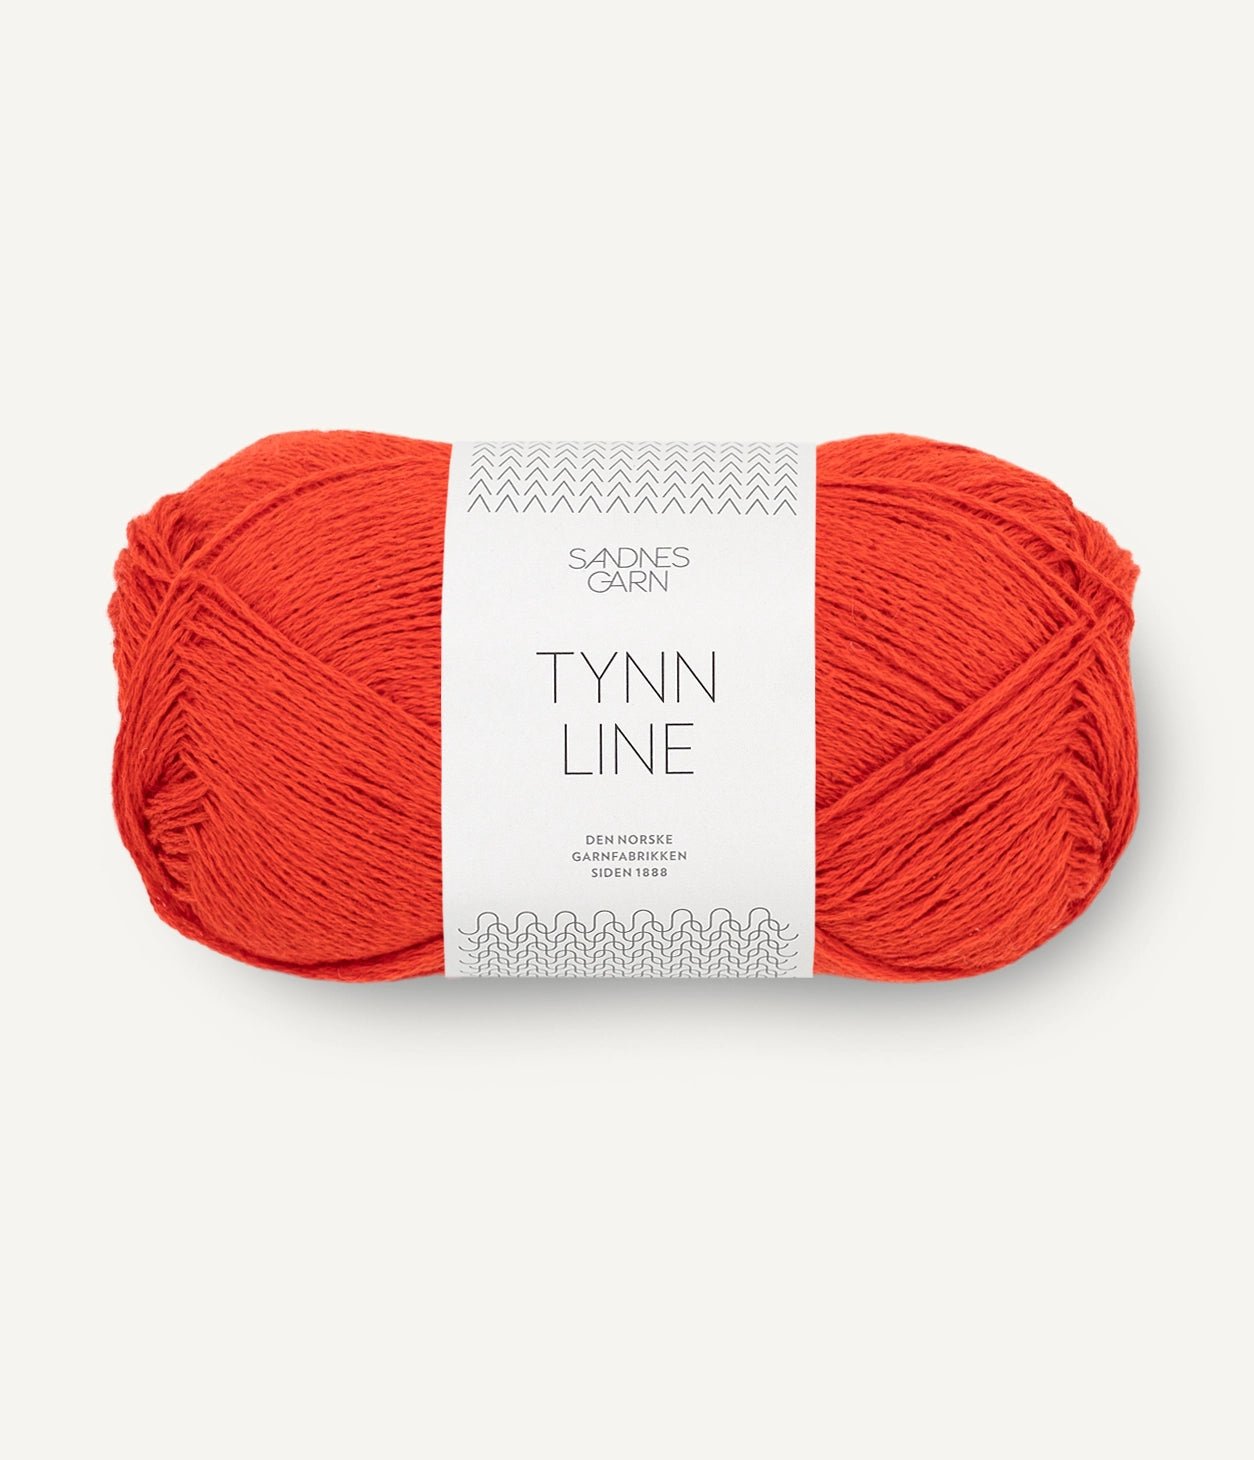 TYNN LINE von SANDNES jetzt online kaufen bei OONIQUE